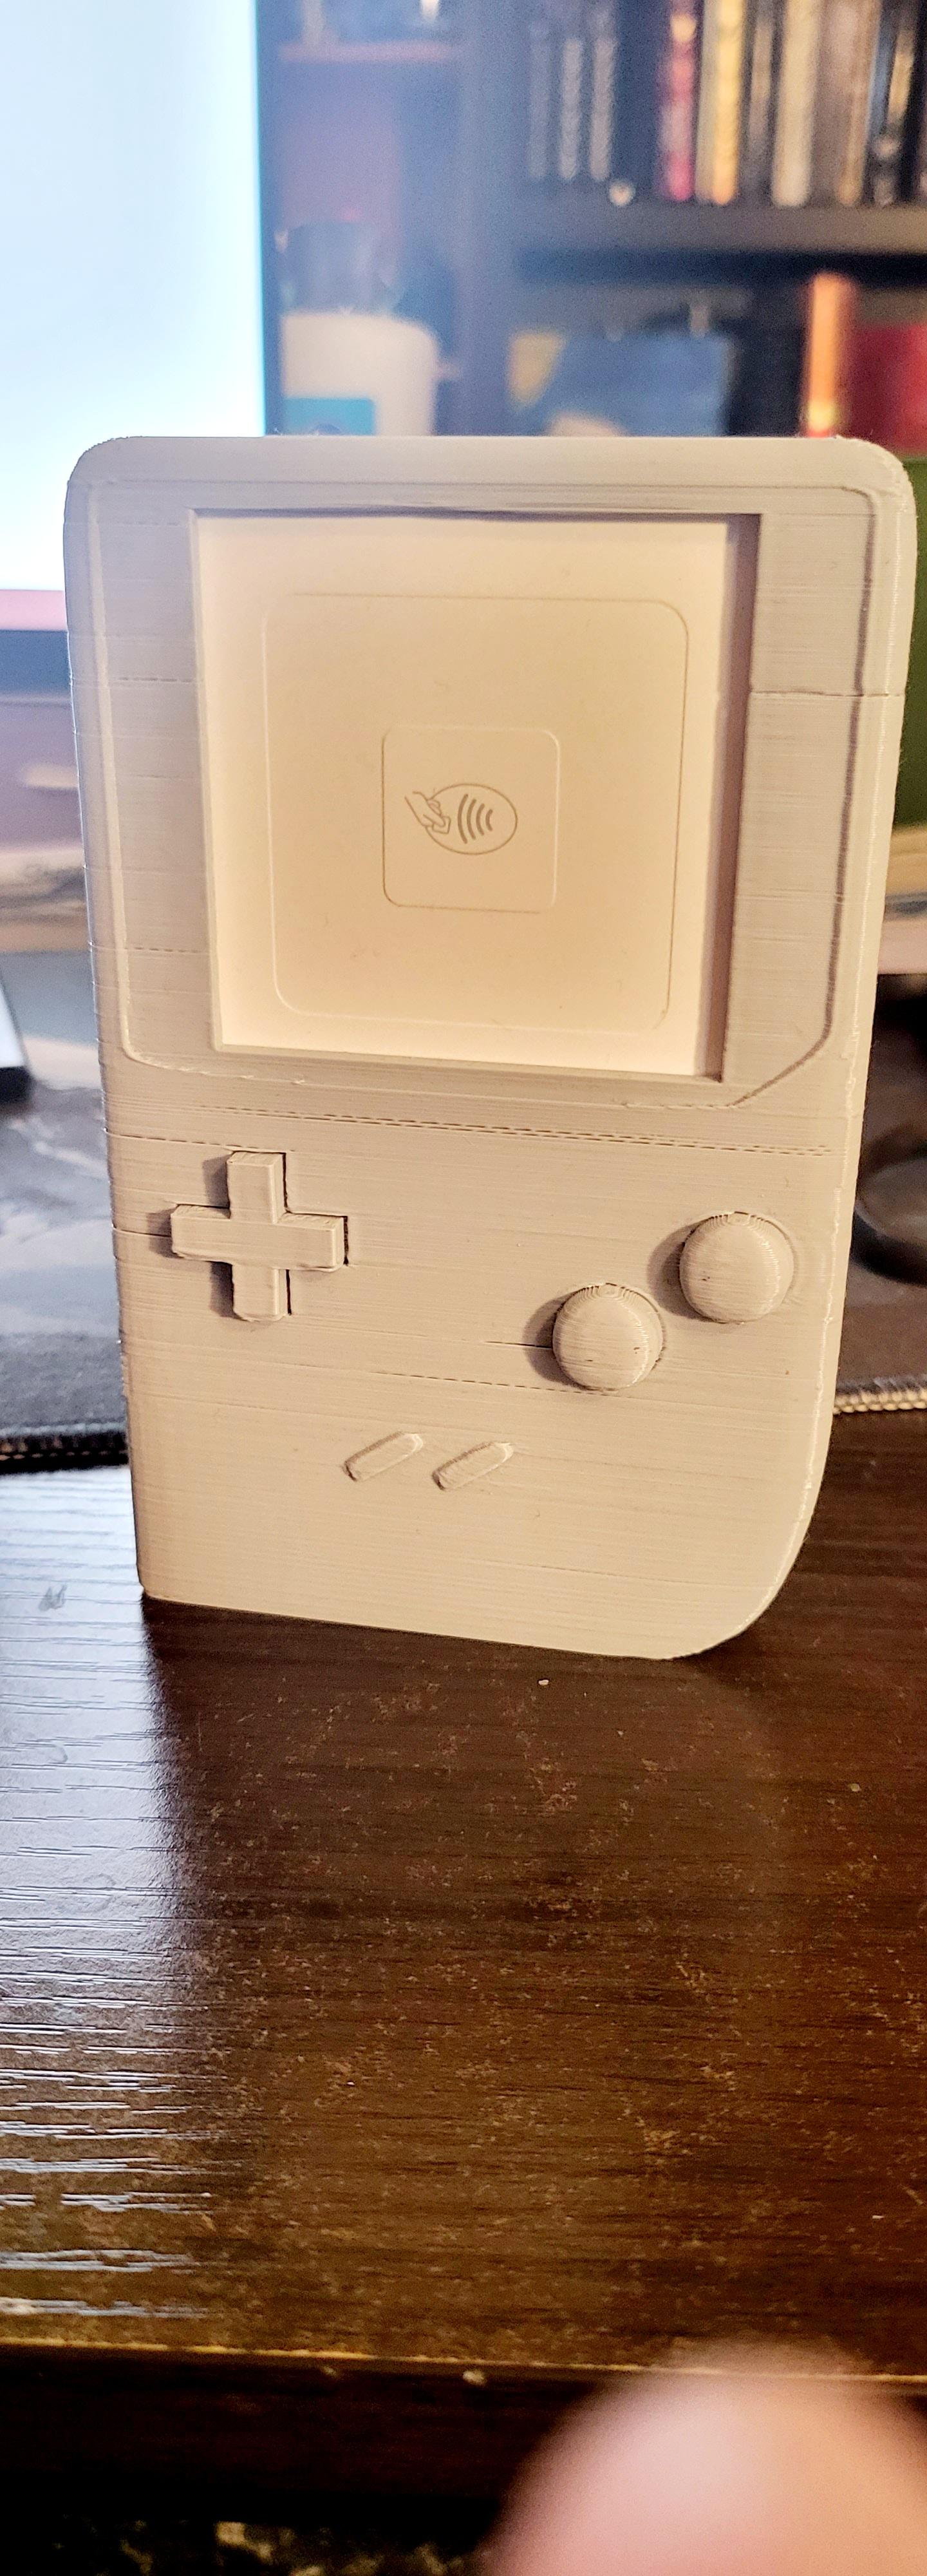 Gameboy Square Card Reader  3d model